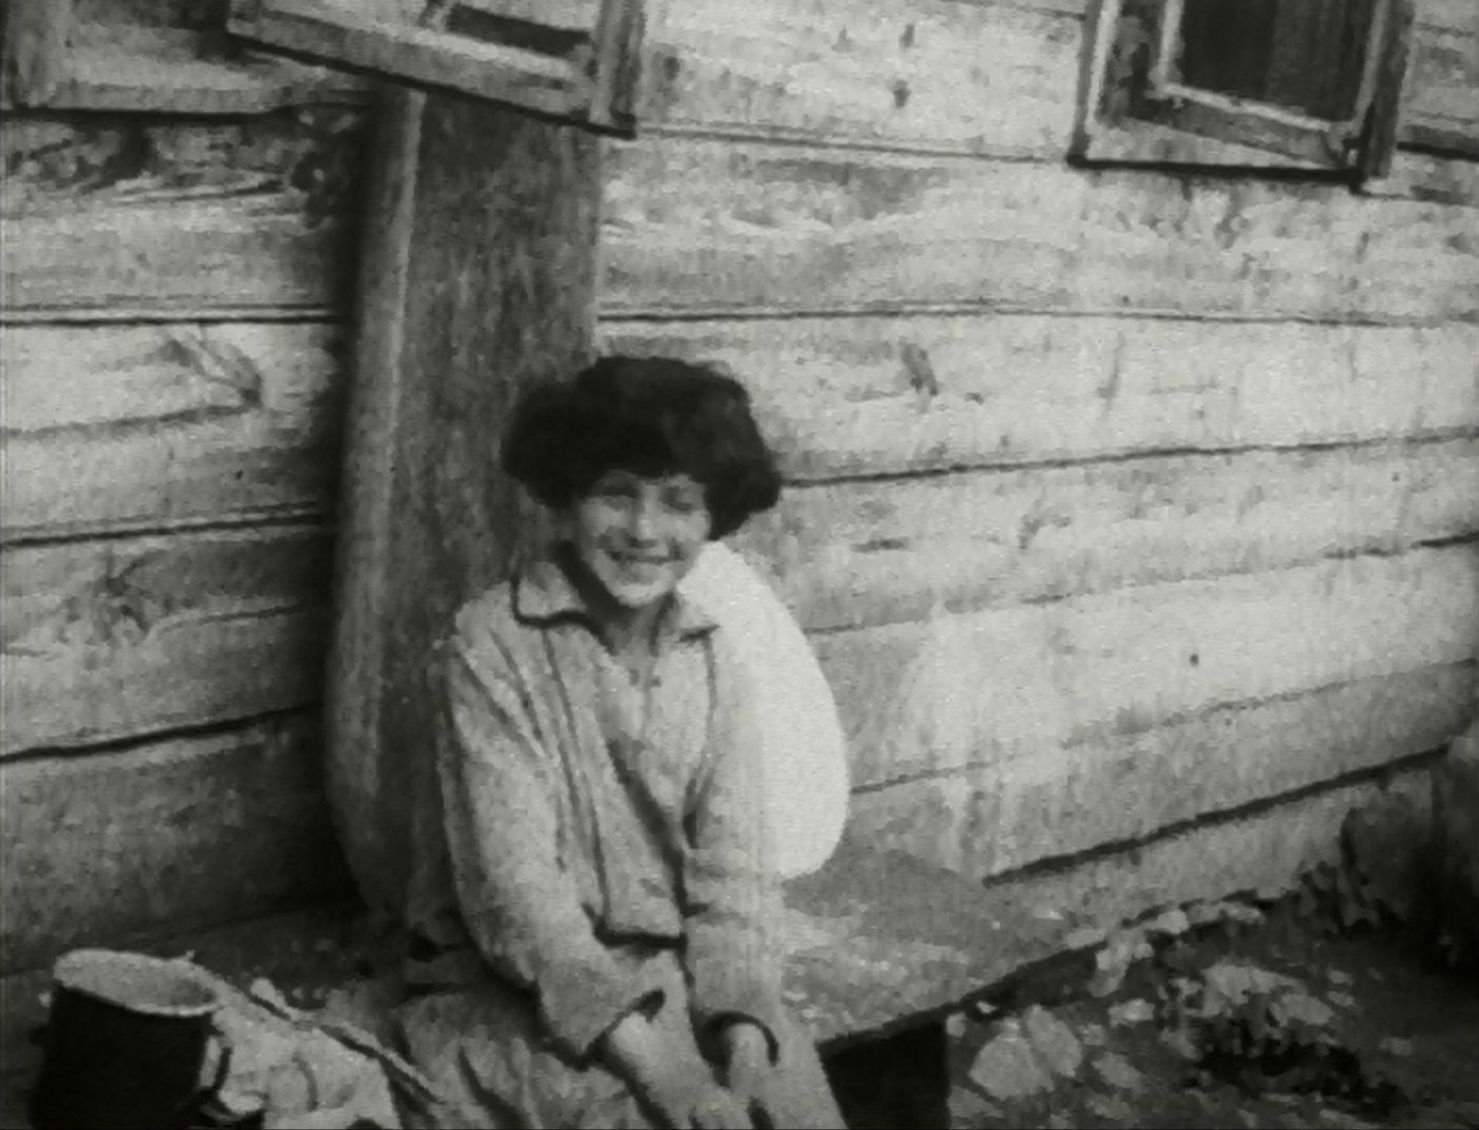 Kobieta siedzi na ławce przed domem - zdjęcie archiwalne.